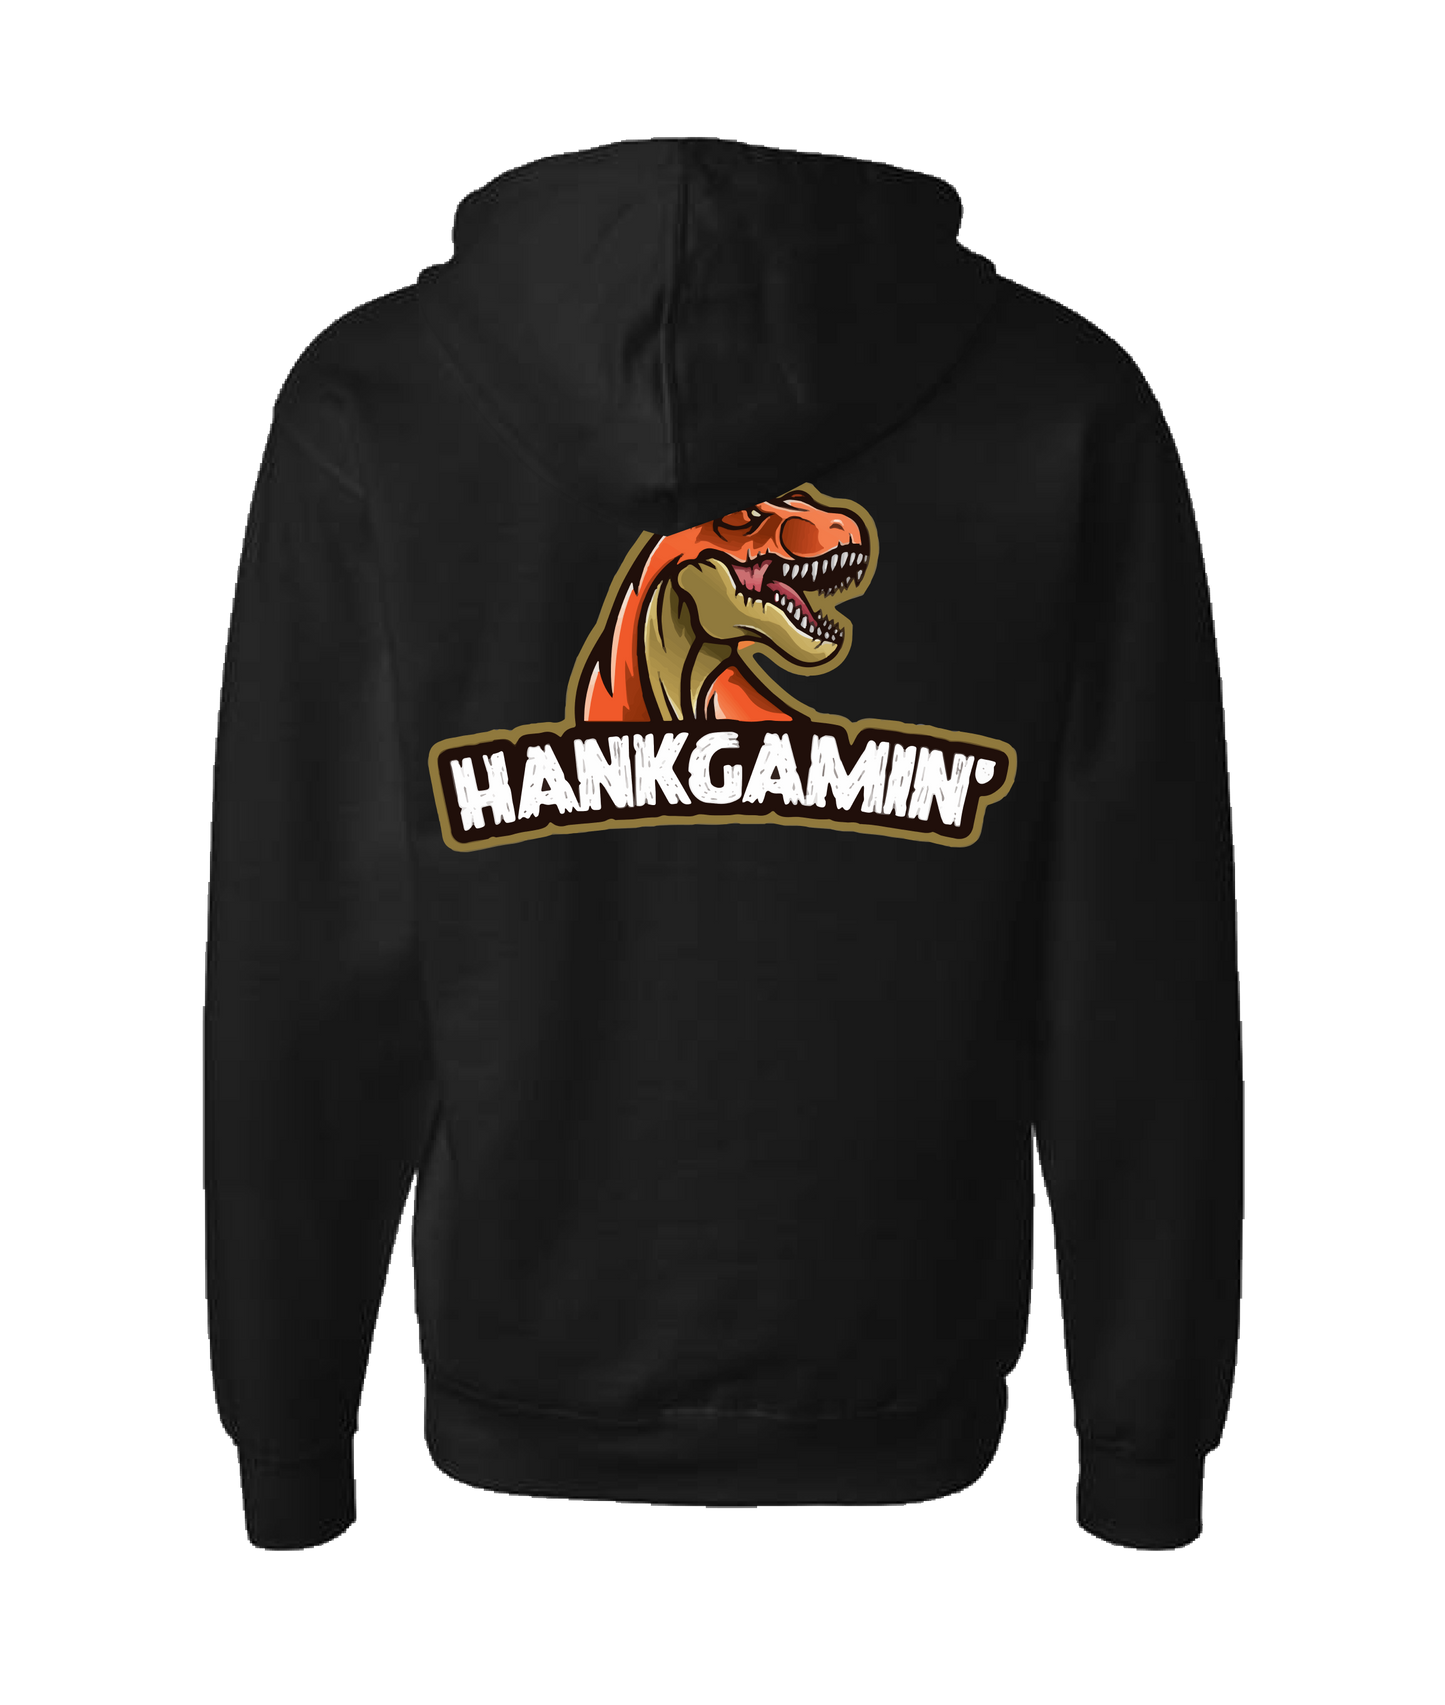 Hank Gamin' - T-Rex Orange - Black Zip Up Hoodie